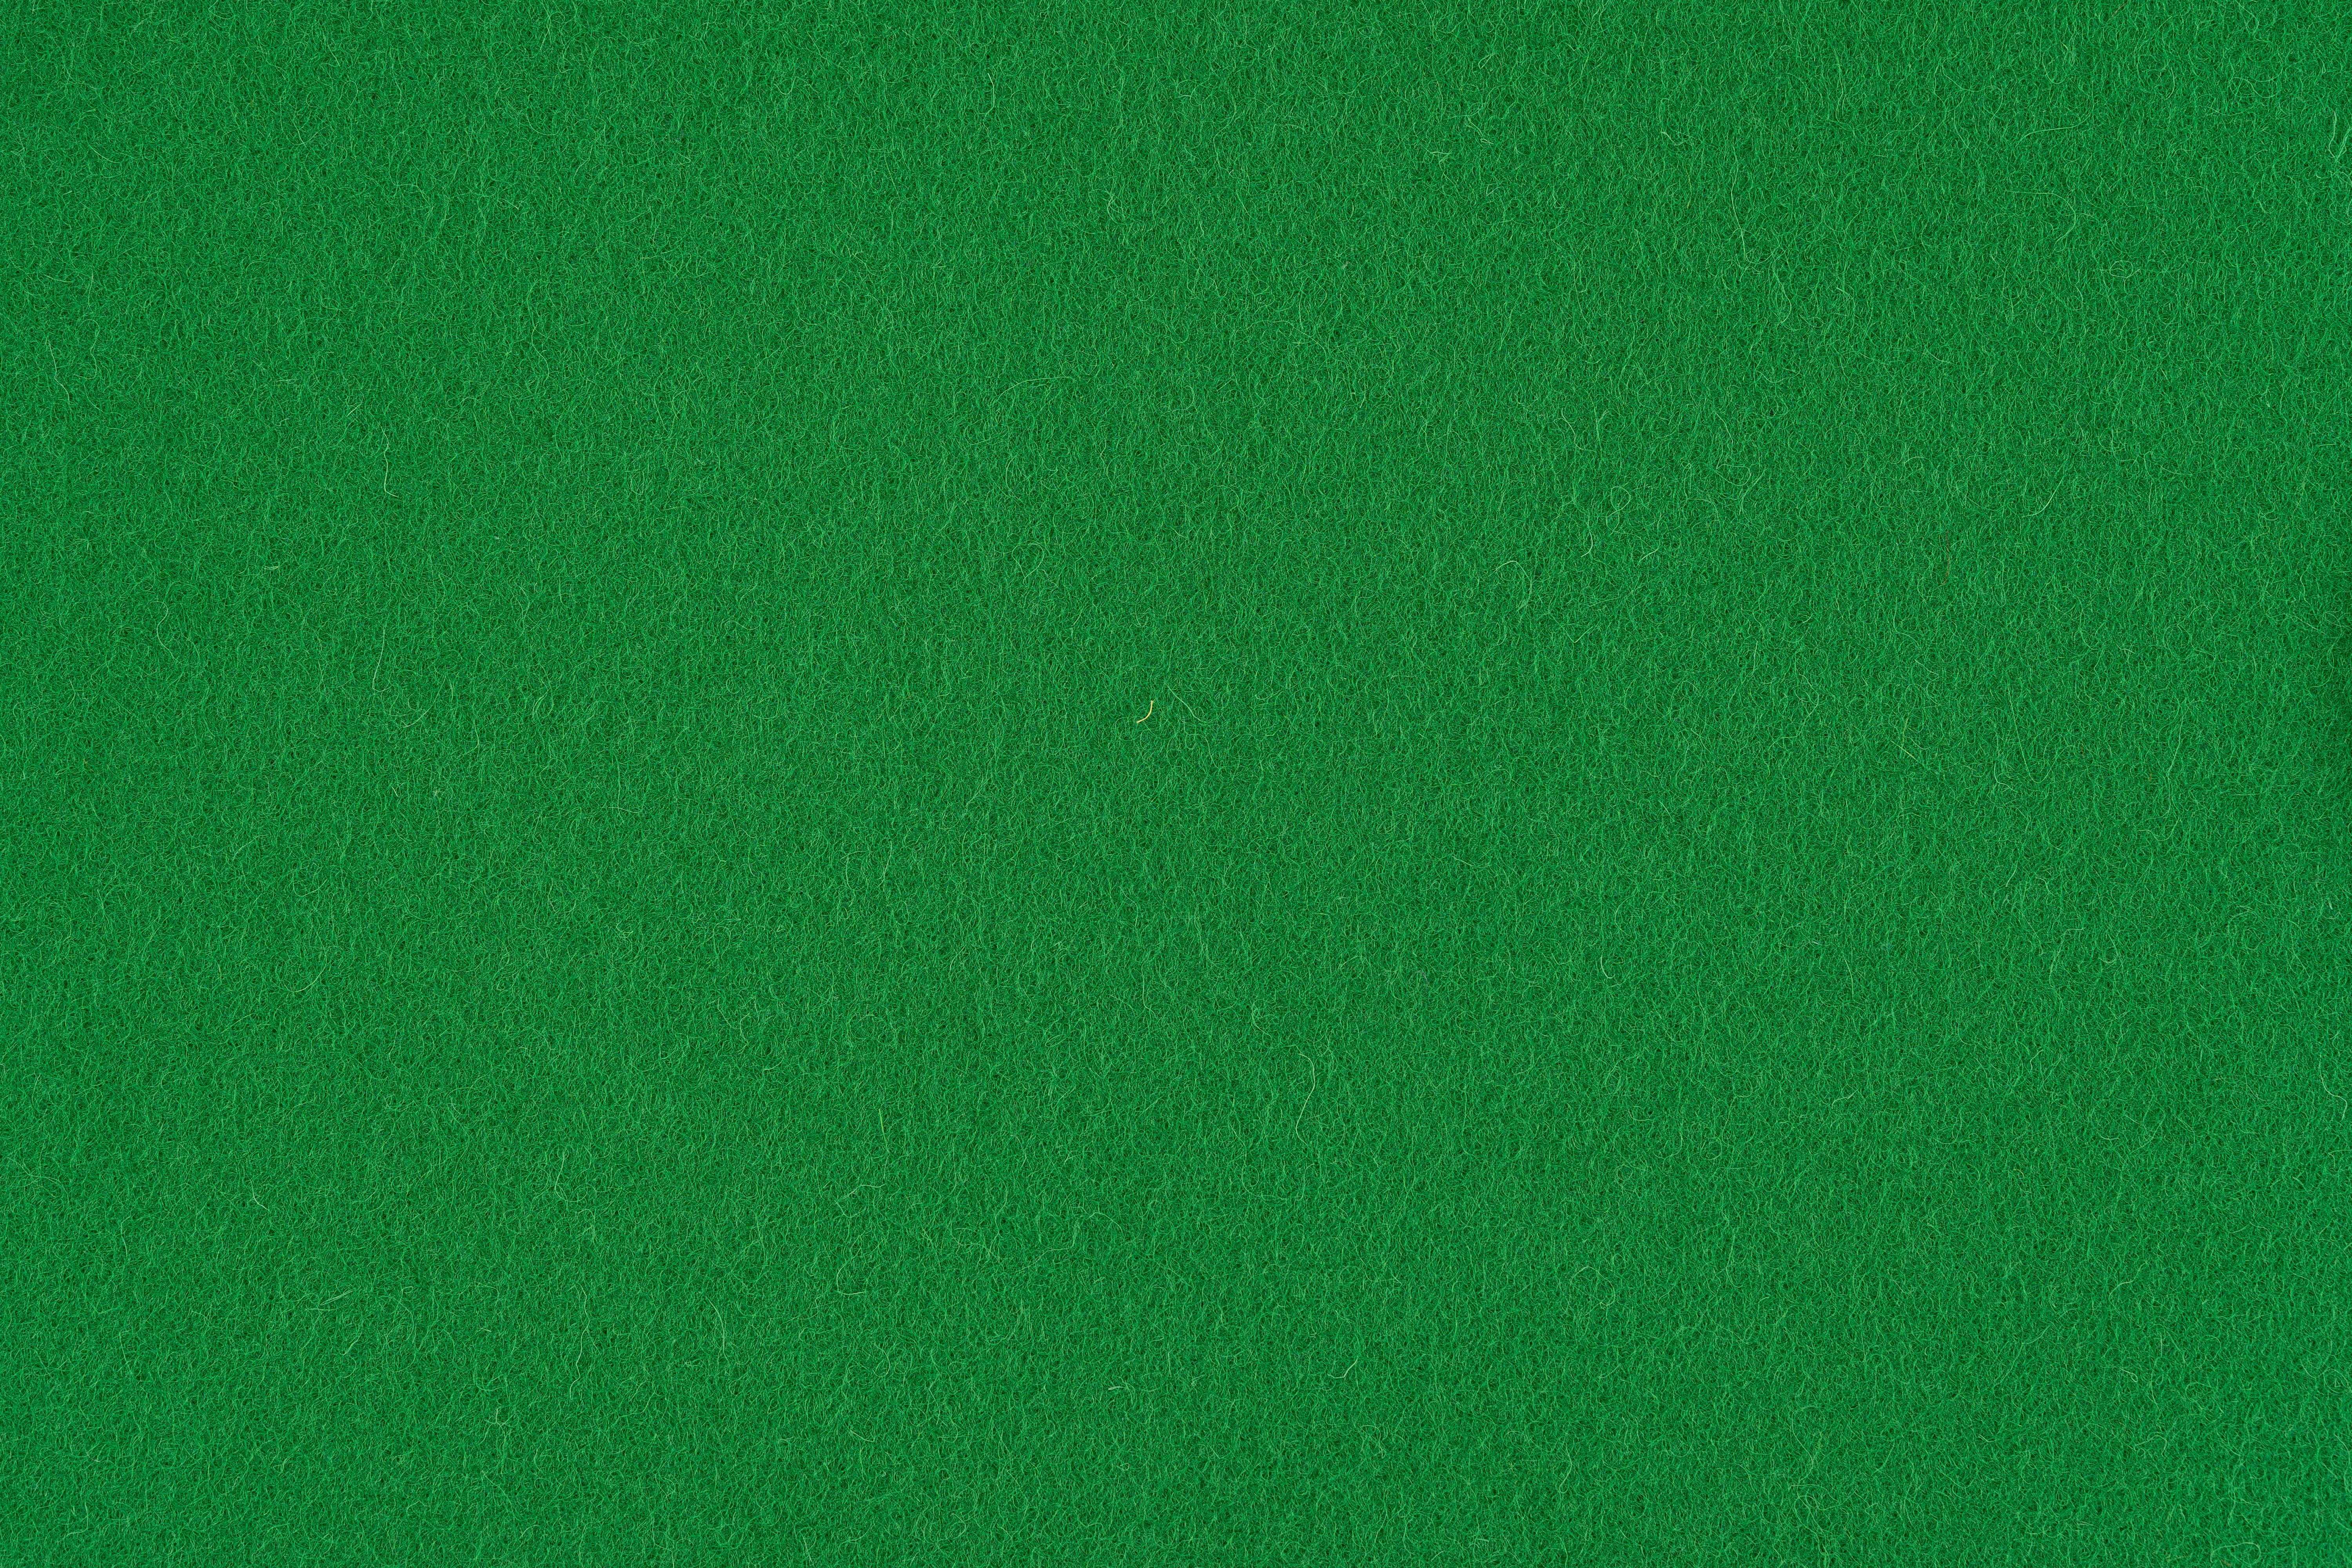 VISTA GREEN TEXTURE, PTB-10099